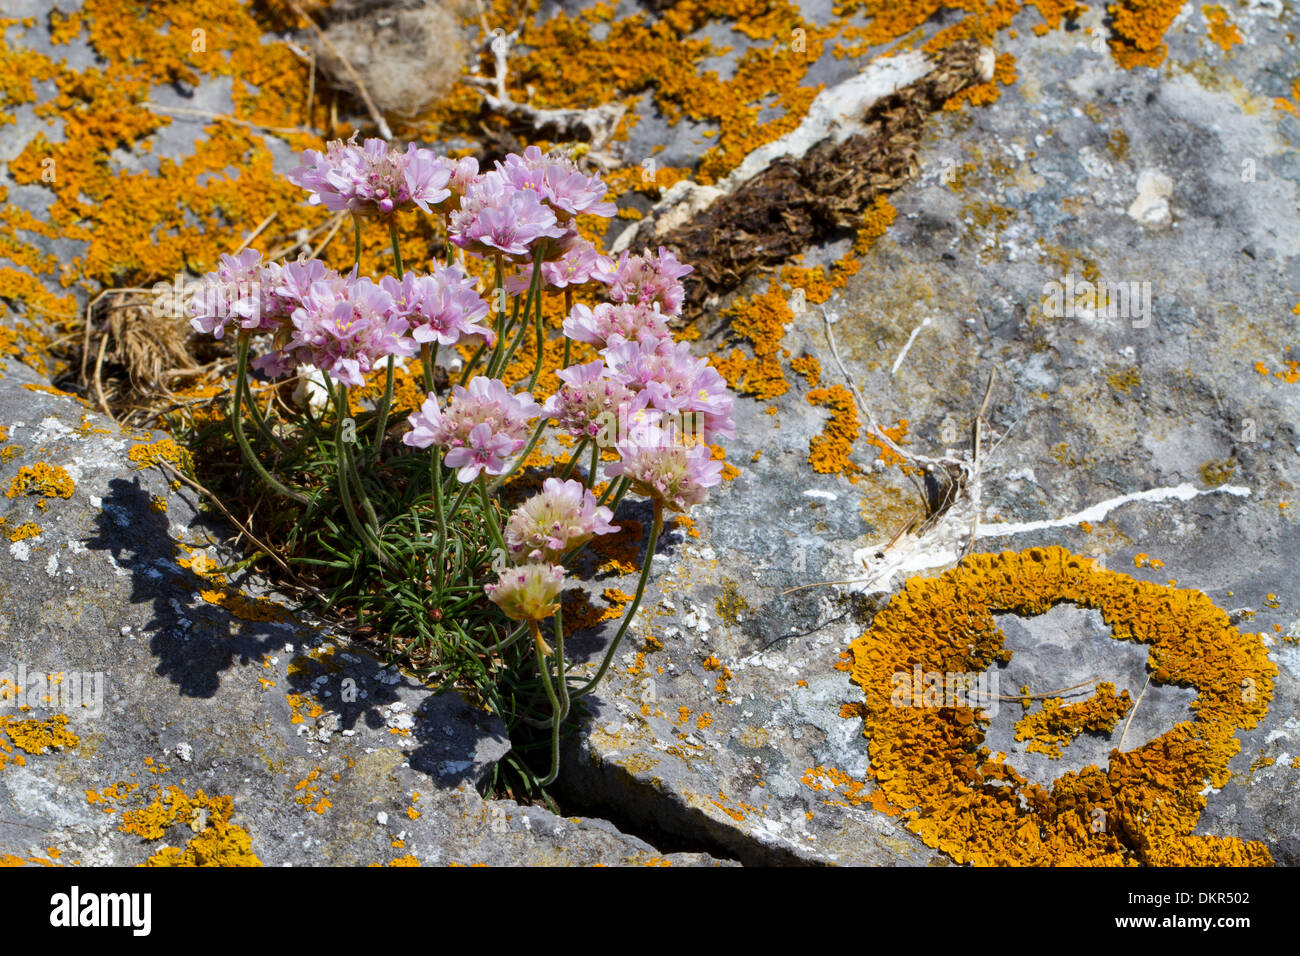 (Thrift Armeria maritima) floraison. Émergeant d'une fissure dans la roche calcaire. Pembrokeshire, Pays de Galles. De juin. Banque D'Images